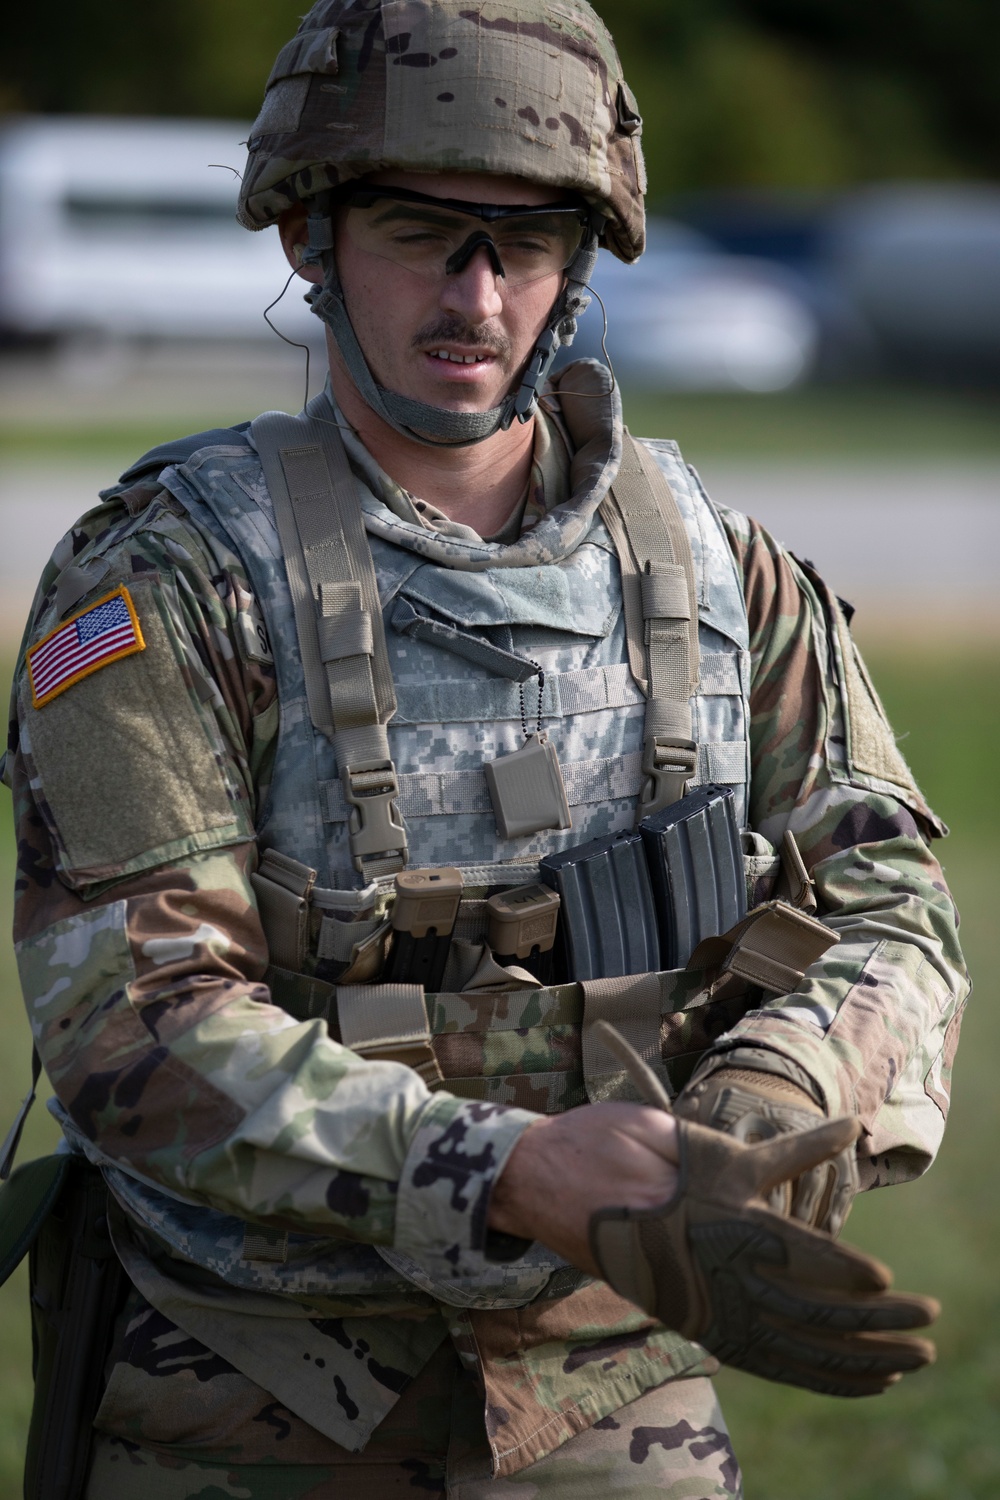 2020 U.S. Army Reserve Best Warrior Competition – Three-gun transition range